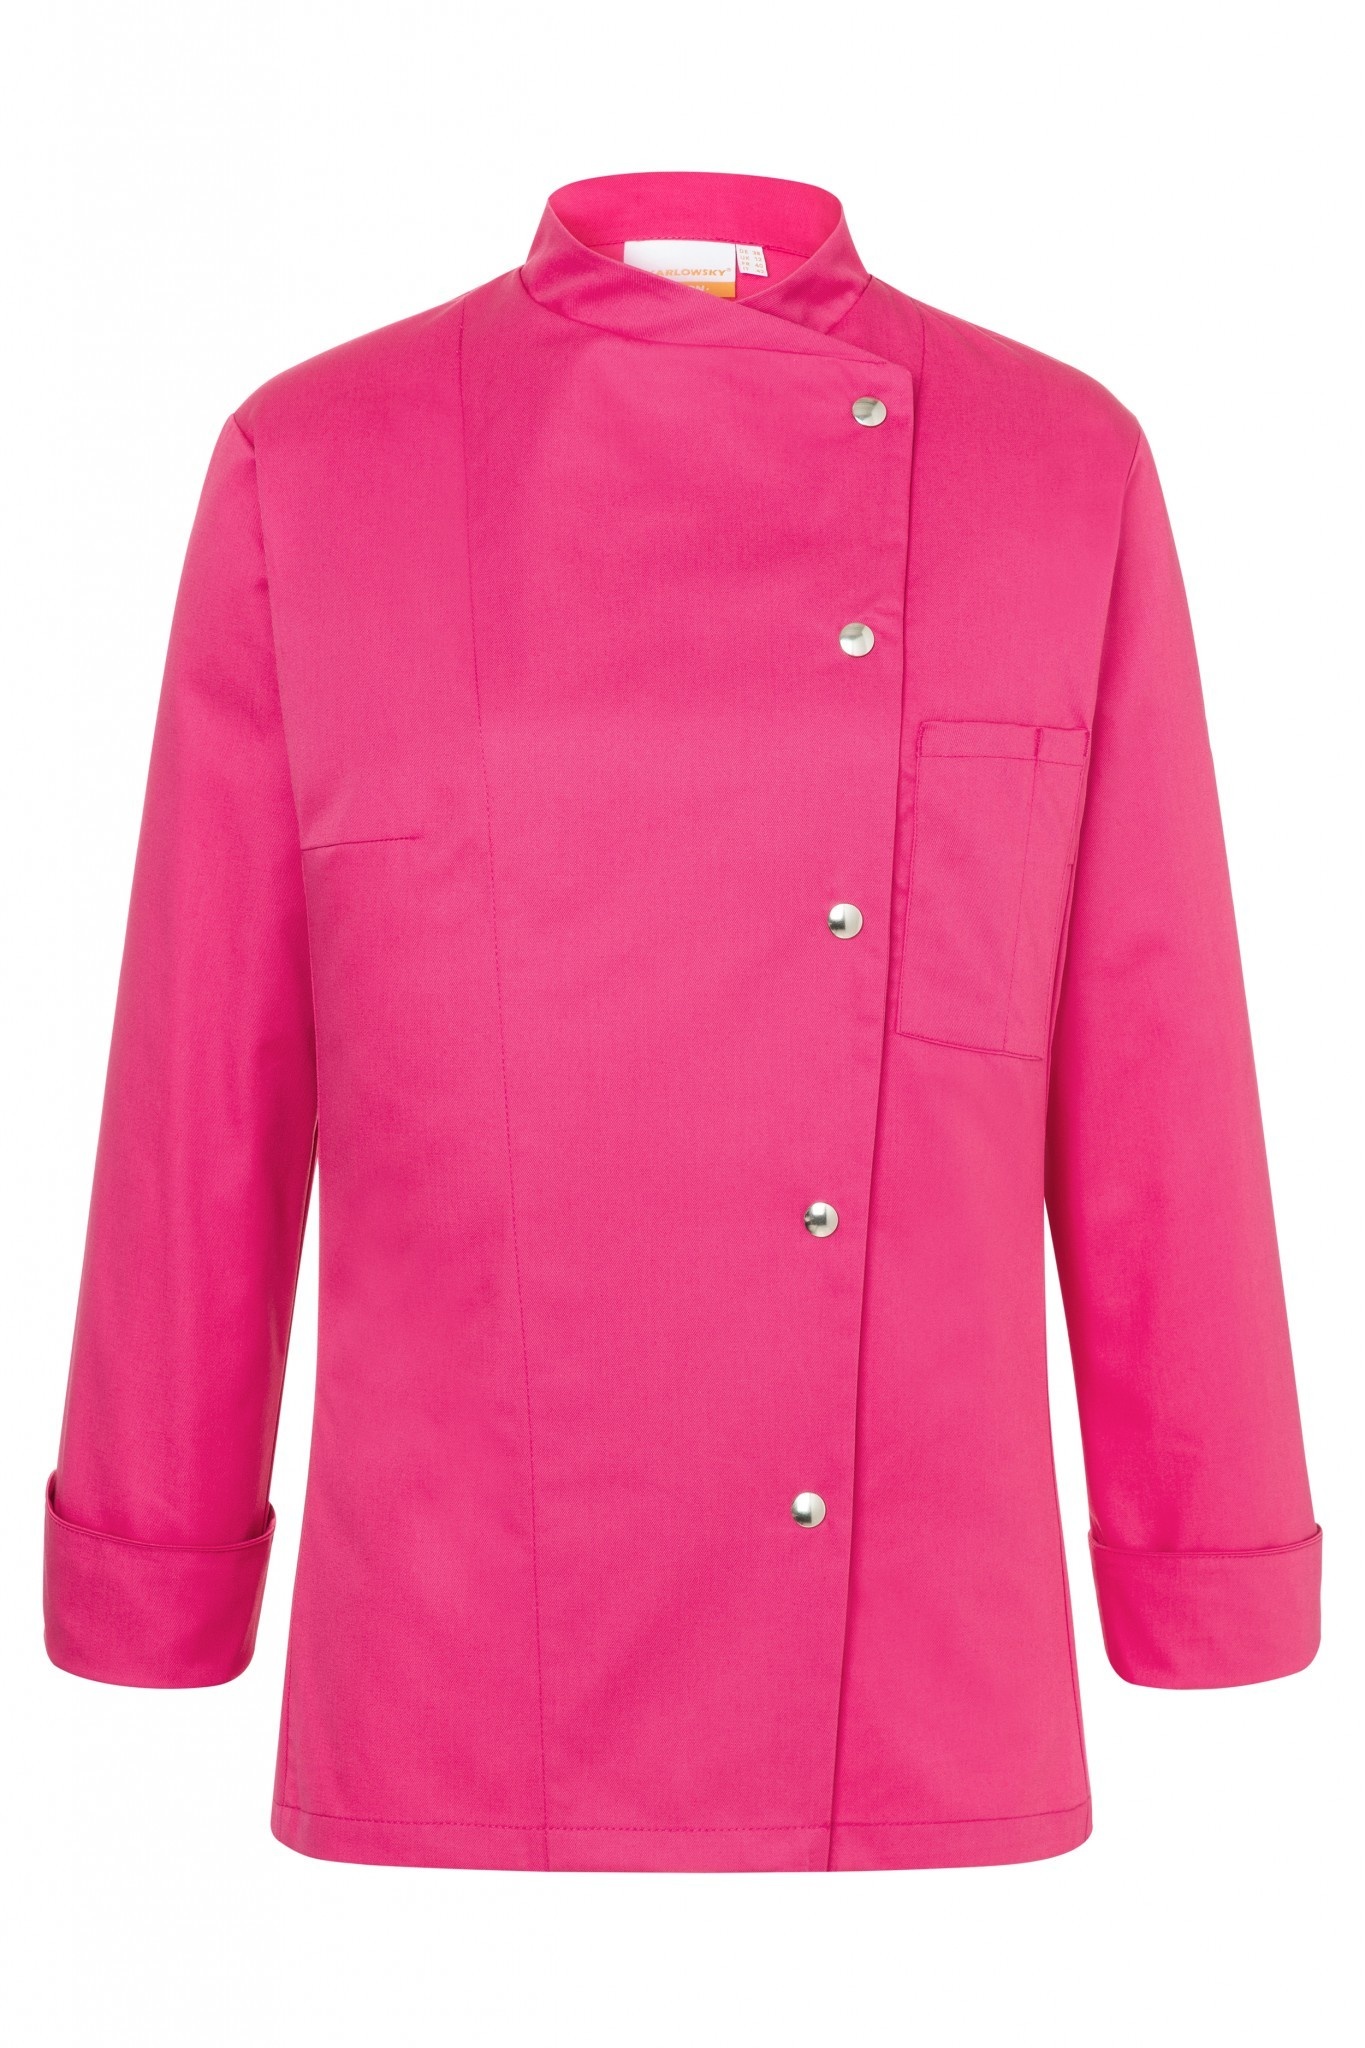 Damenkochjacke Larissa | Pink | 65% Polyester / 35% Baumwolle | Erhältlich in 9 Größen